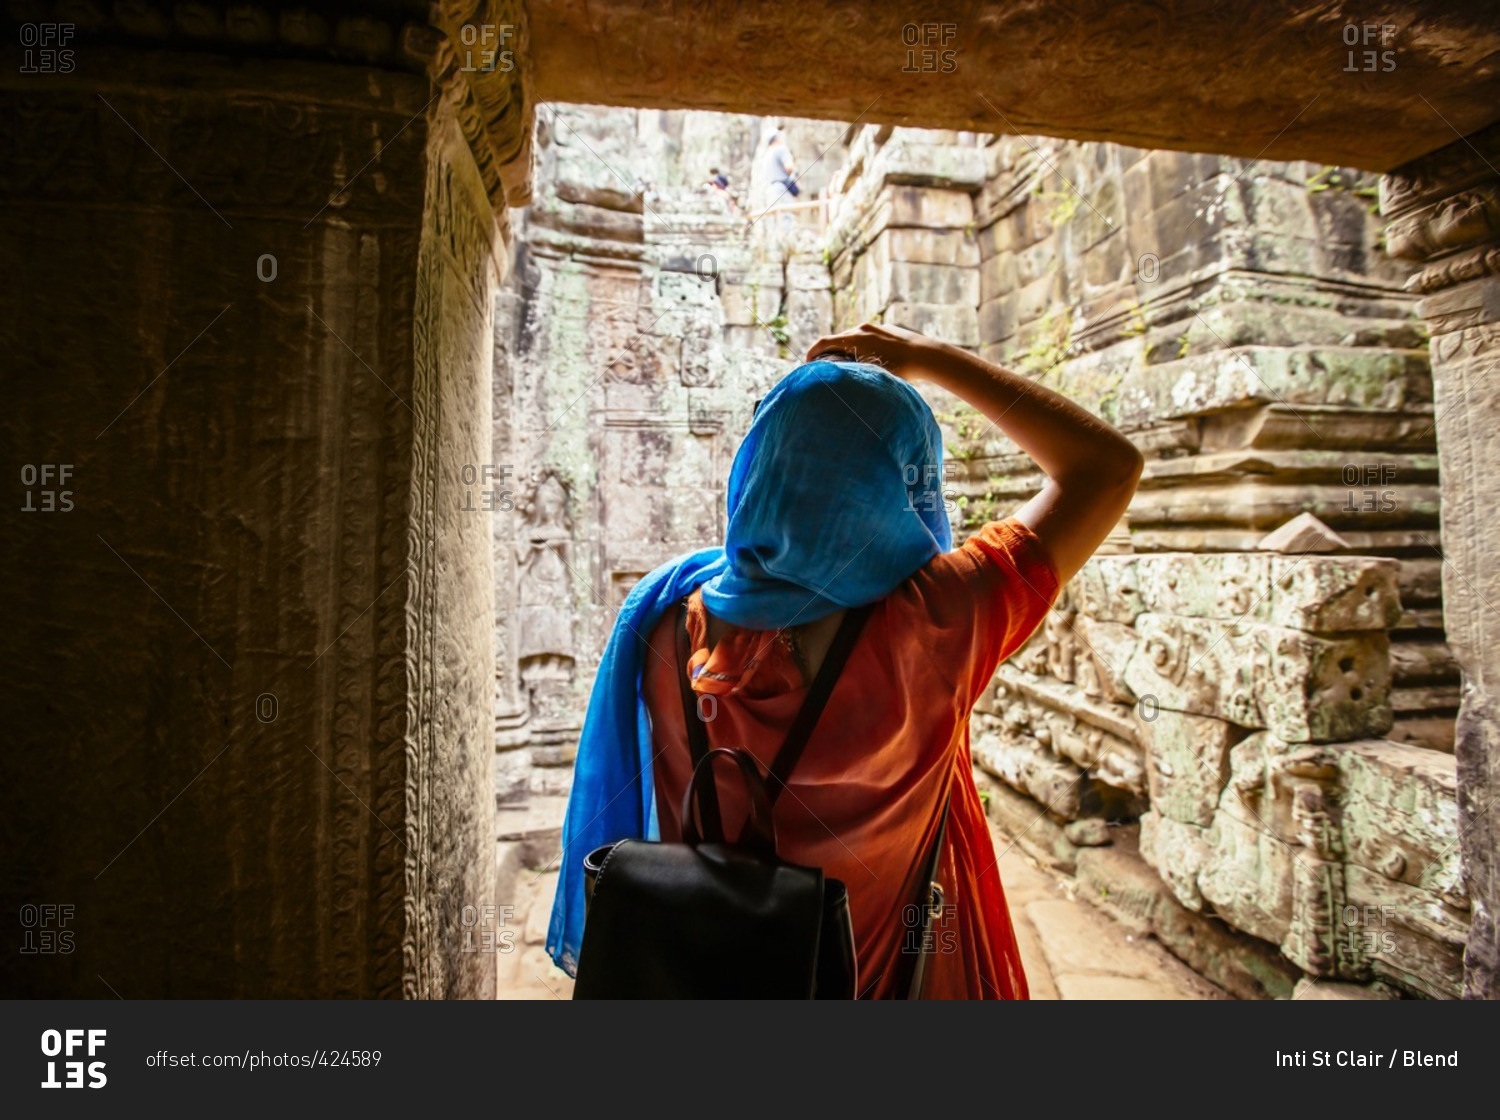 Woman exploring ruins at Angkor Wat, Siem Reap, Cambodia